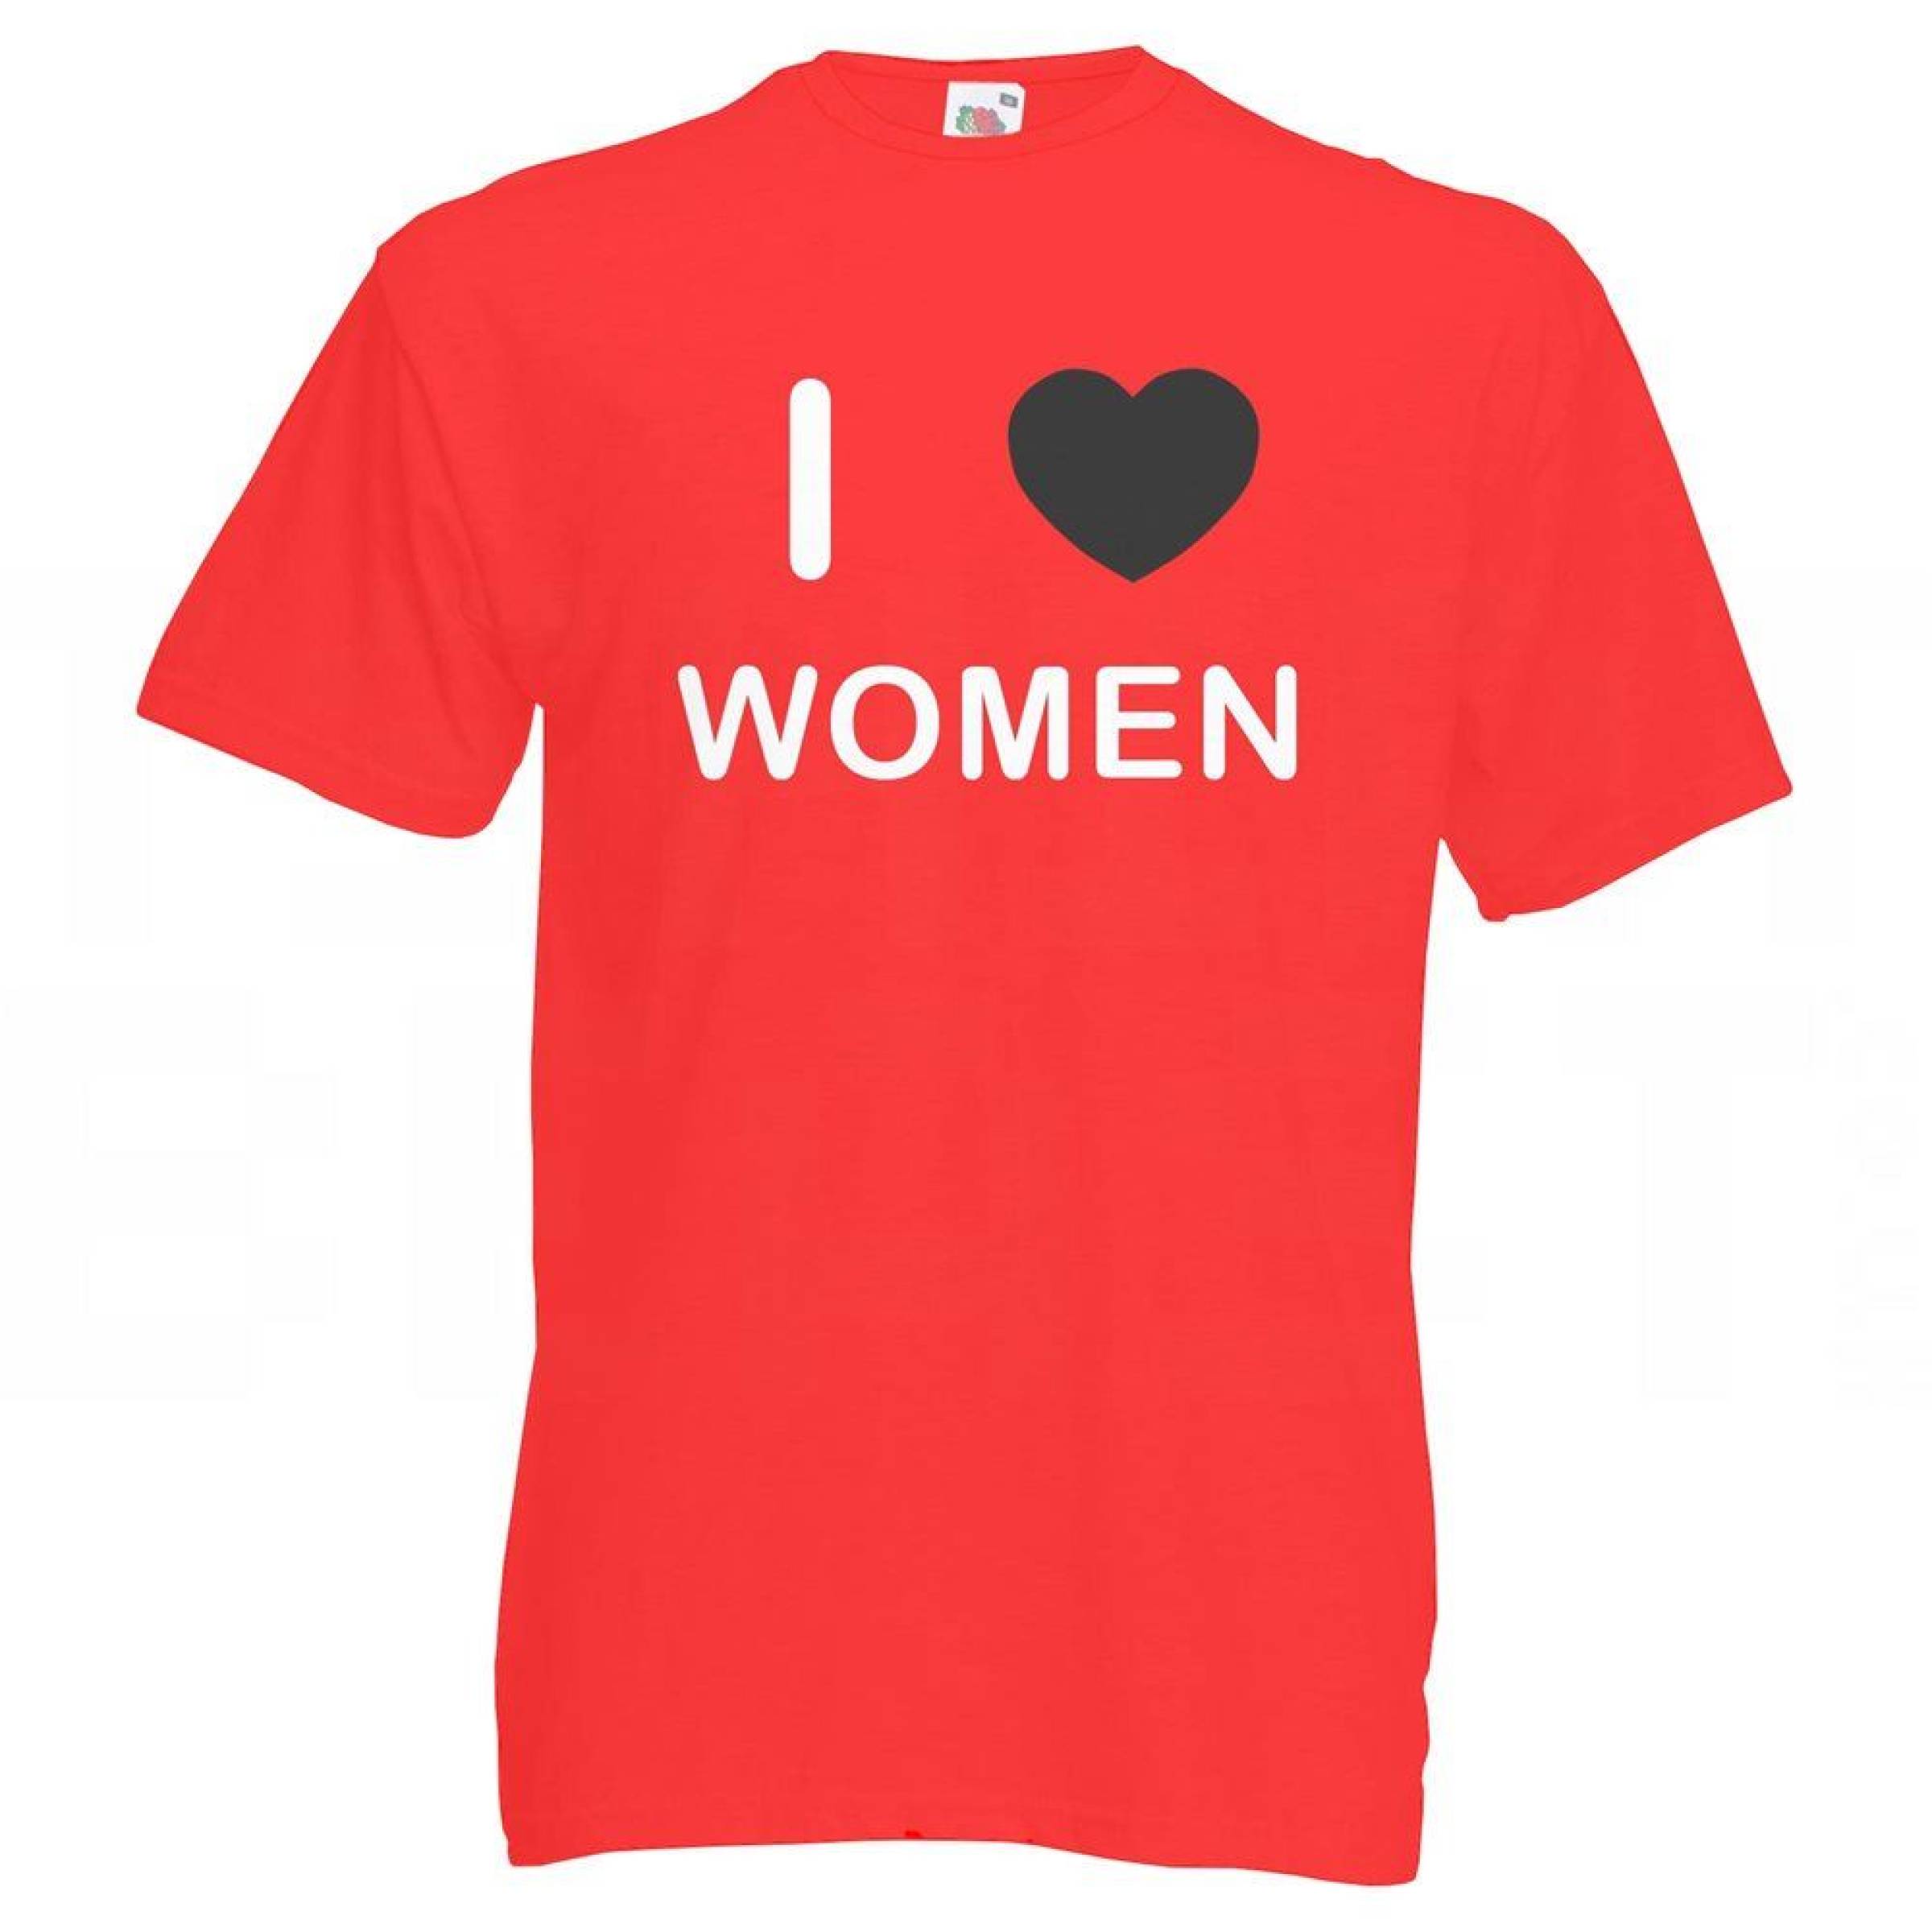 Women Tshirt